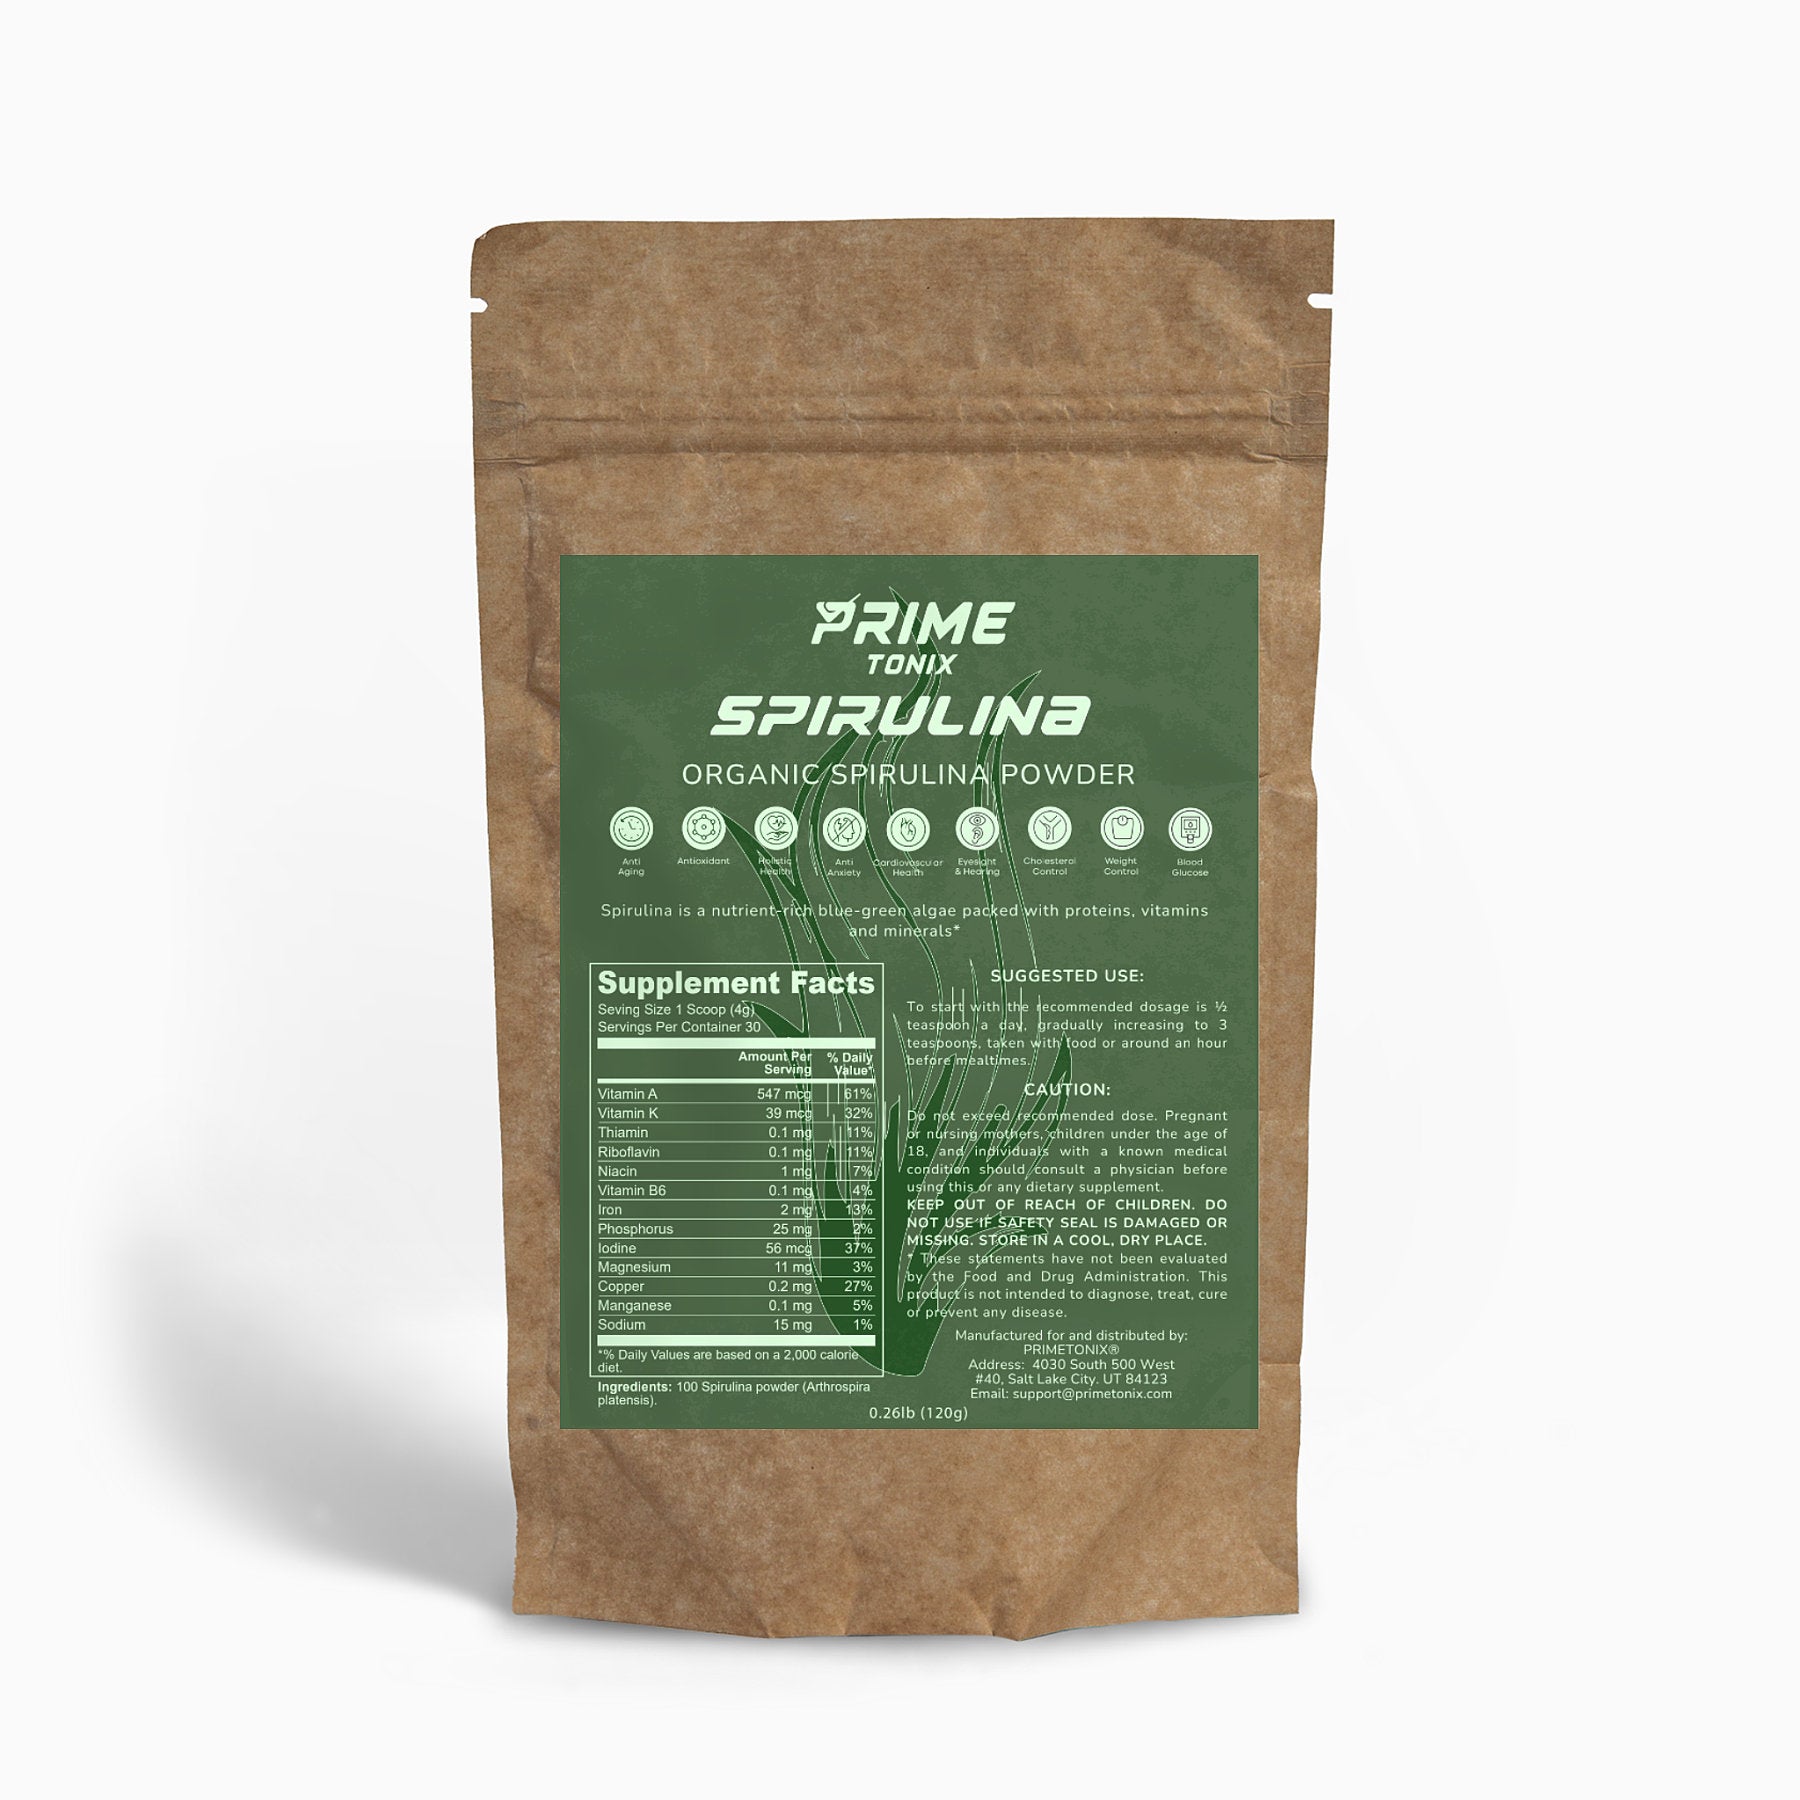 Prime Organic Spirulina Powder